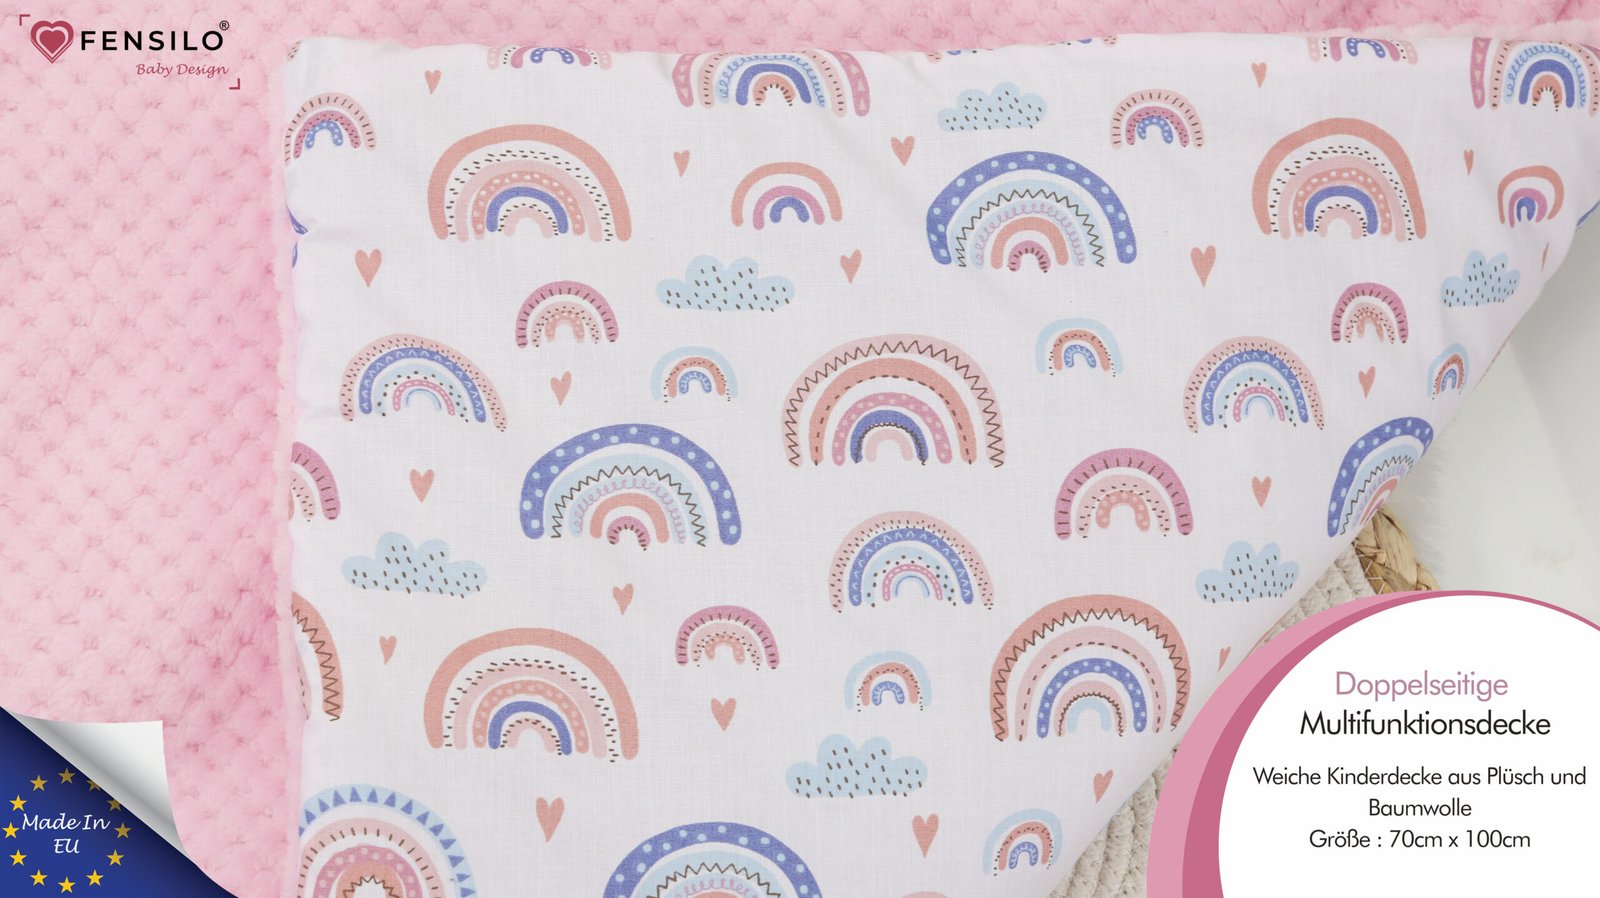 FENSILO Babydecke – Kuscheldecke Baby Ausstattung – Doppelseitige Multifunktionsdecke Krabbeldecke Weiche Kinderdecke aus Plüsch und Baumwolle 70x100cm Hergestellt in der EU Rosa Regenbogen